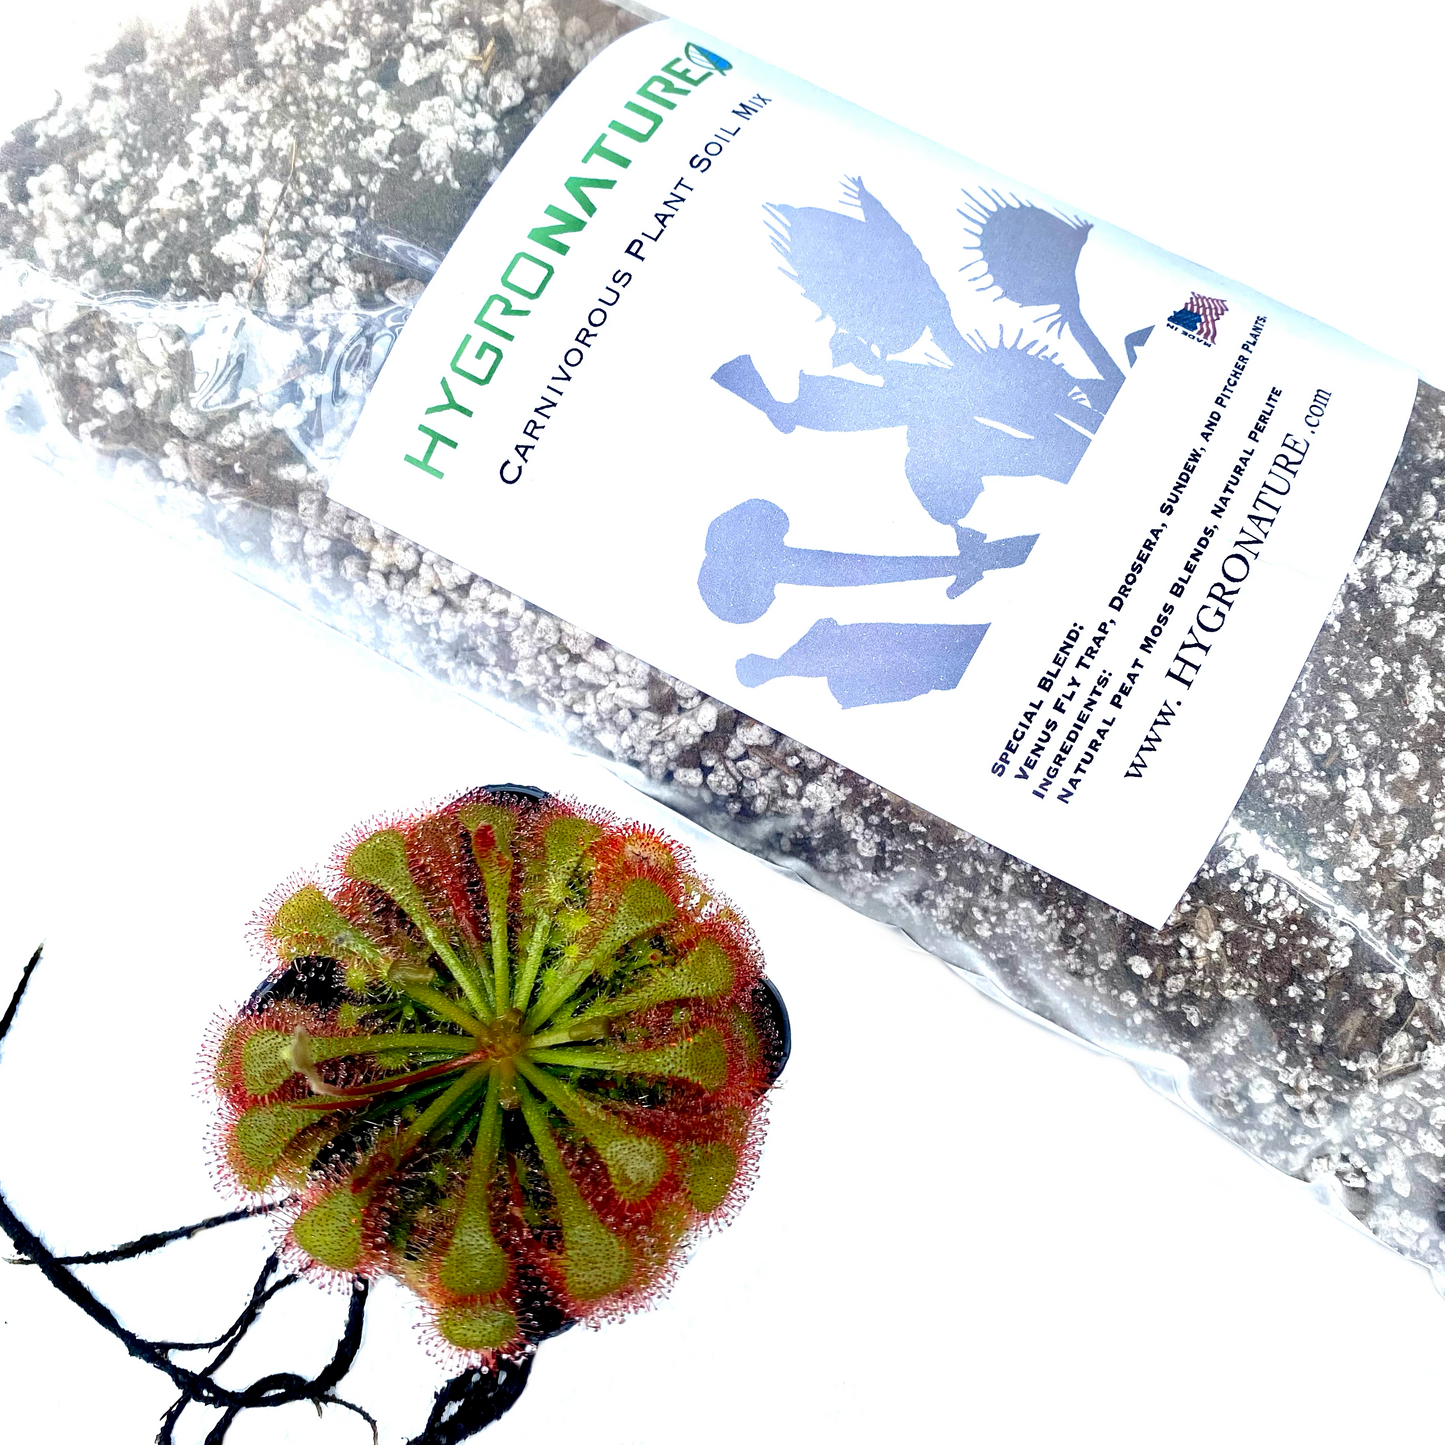 Special Blend Carnivorous Plants Soil Mix for Venus Flytrap Drosera Sundew Pitcher Plants HYGRONATURE